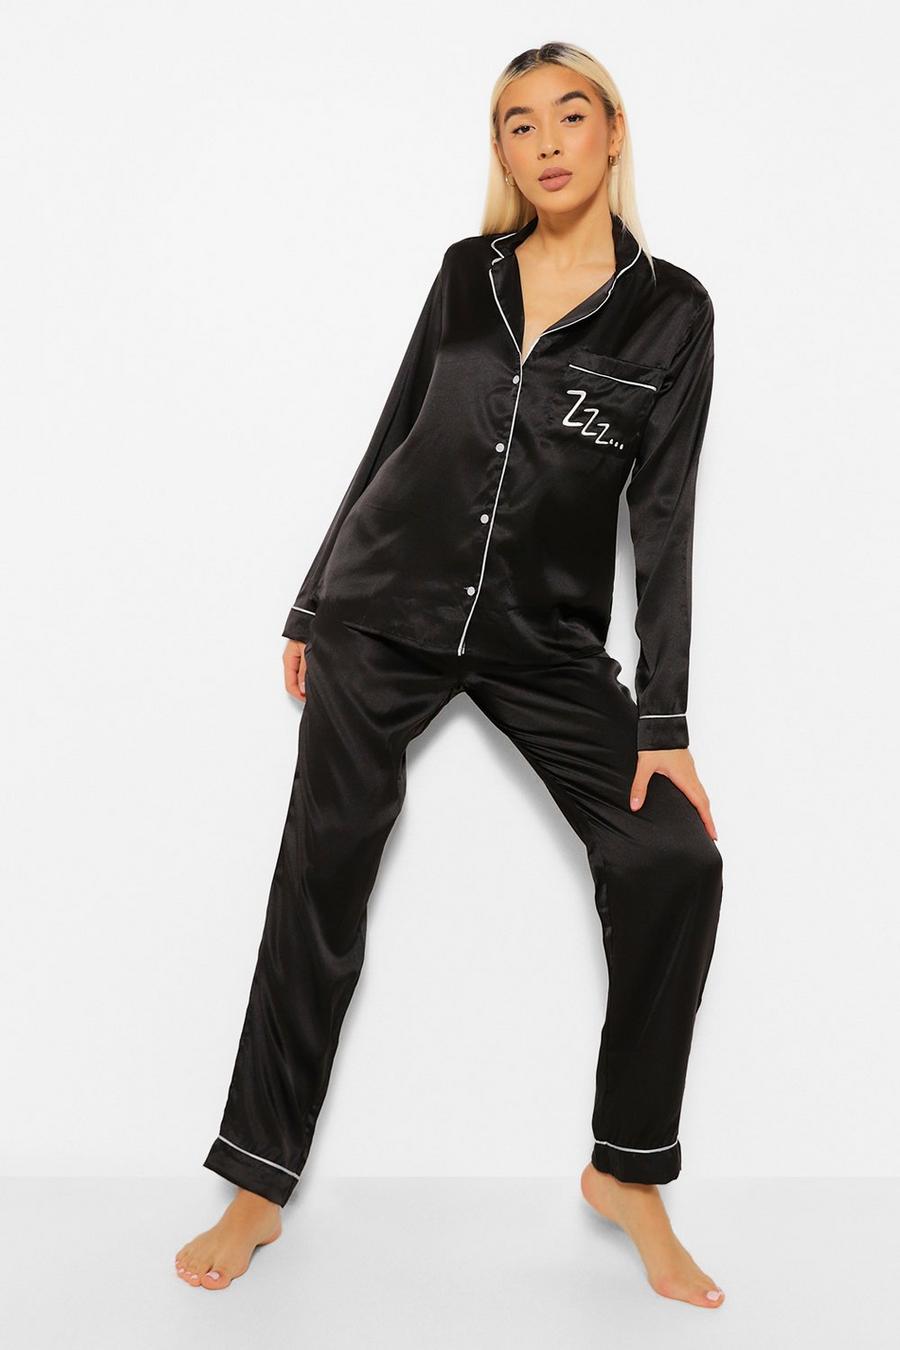 Set pigiama in raso con pantaloni lunghe e top con scritta Zzz e bottoni, Black negro